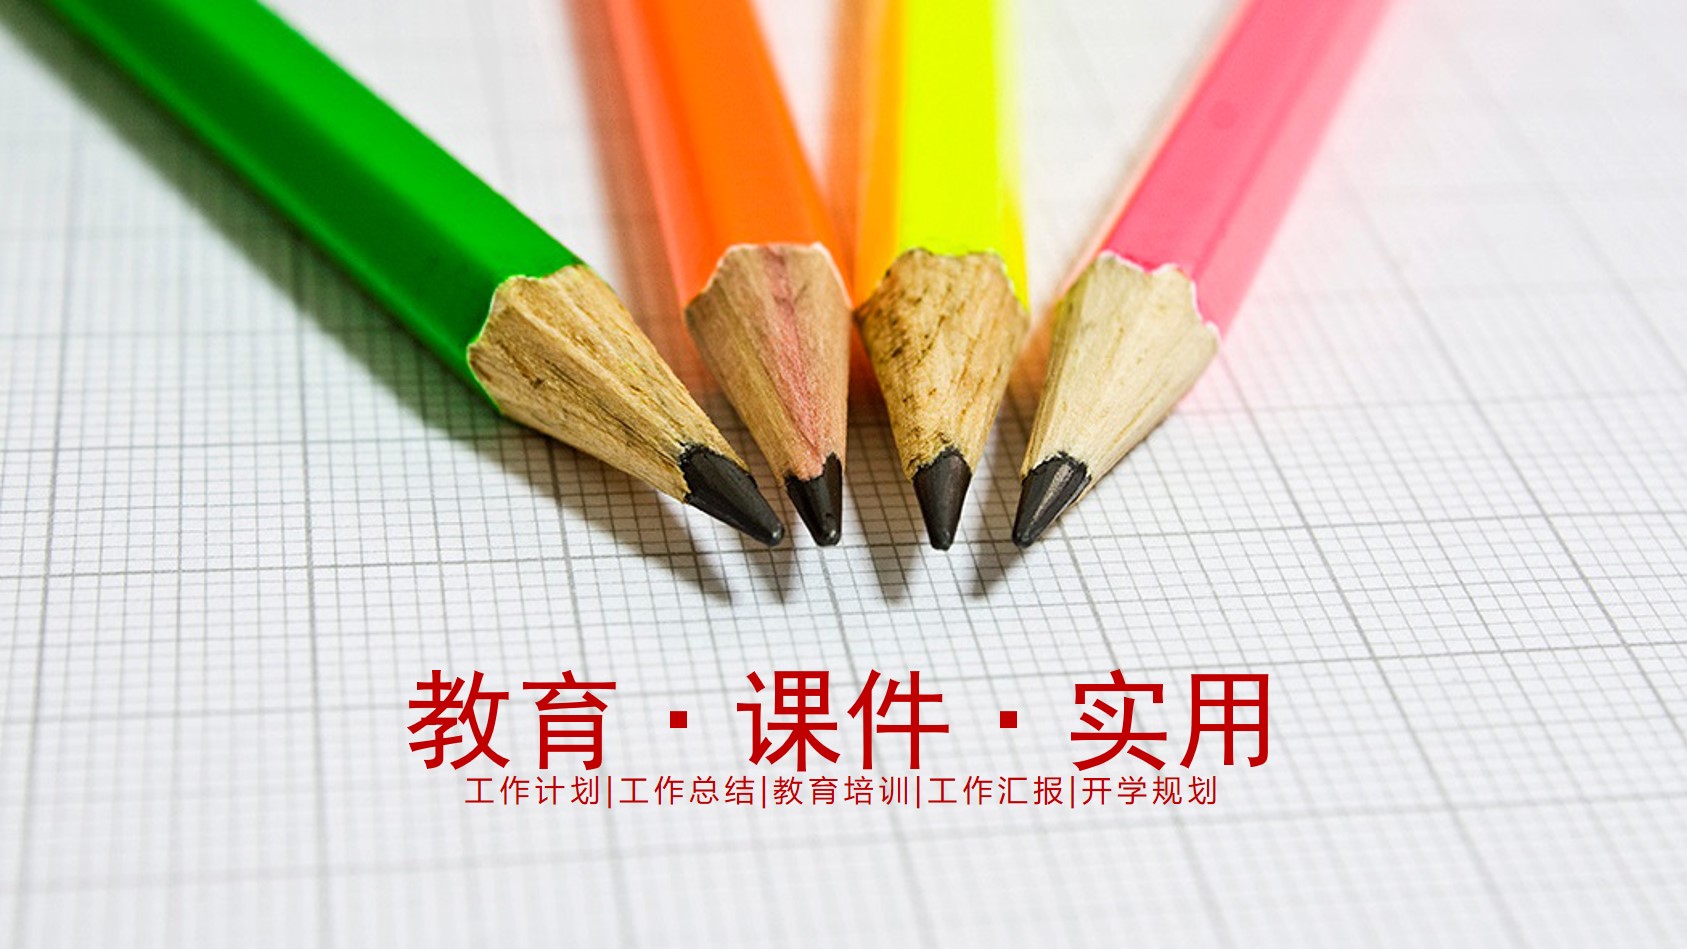 彩色铅笔背景的教育培训教师公开课PPT模板